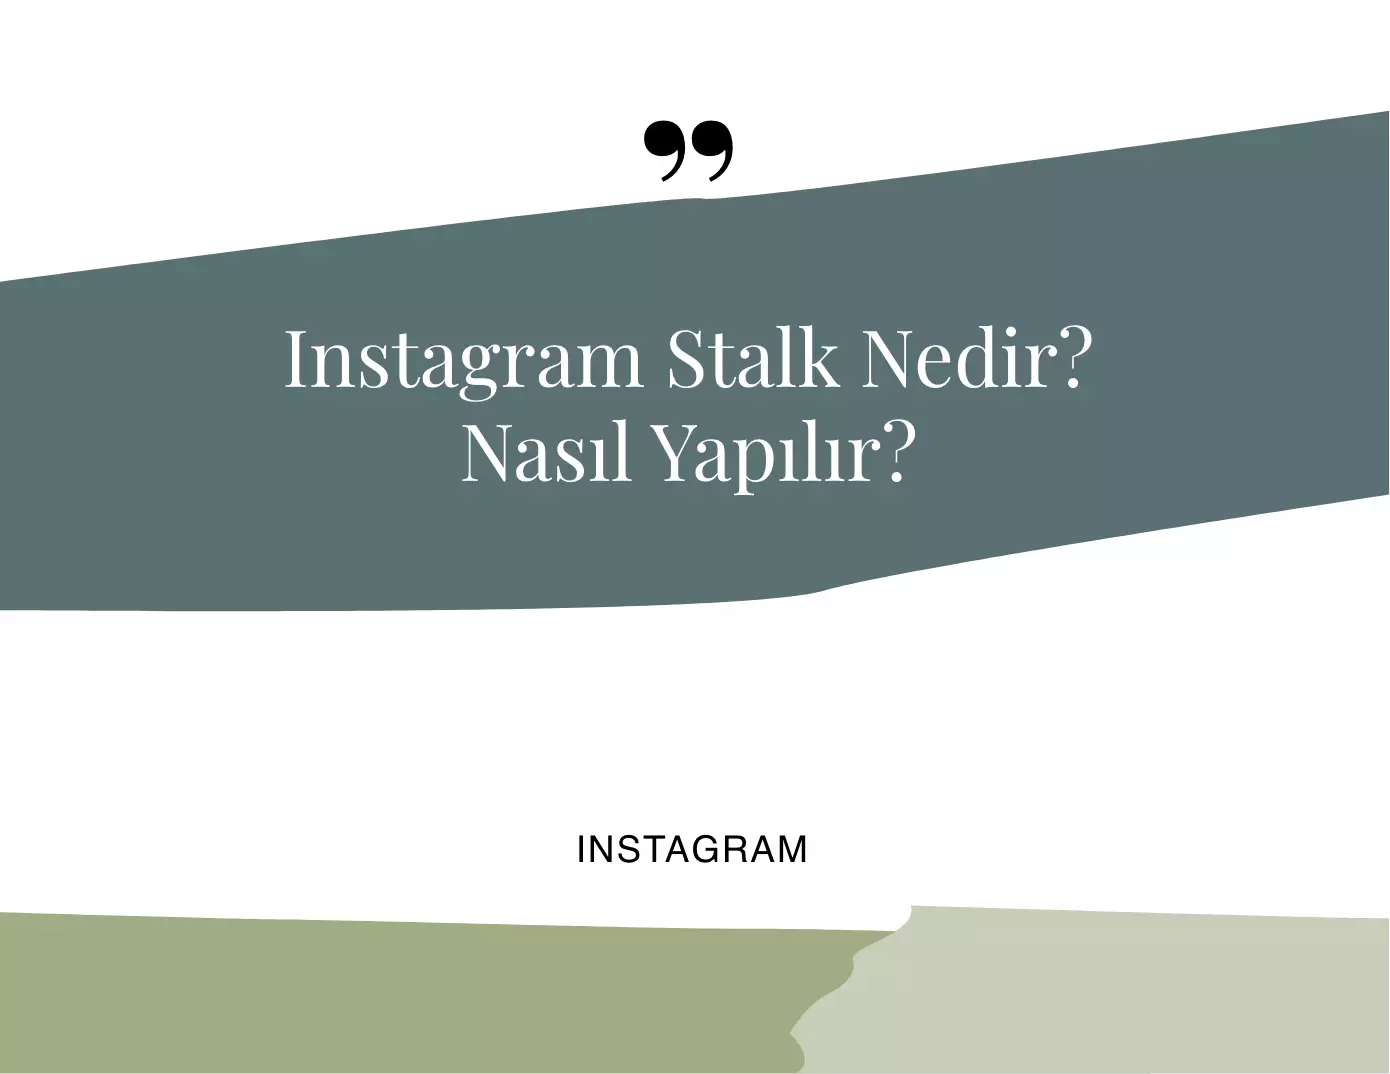 Instagram Stalk Nedir? Nasıl Yapılır?